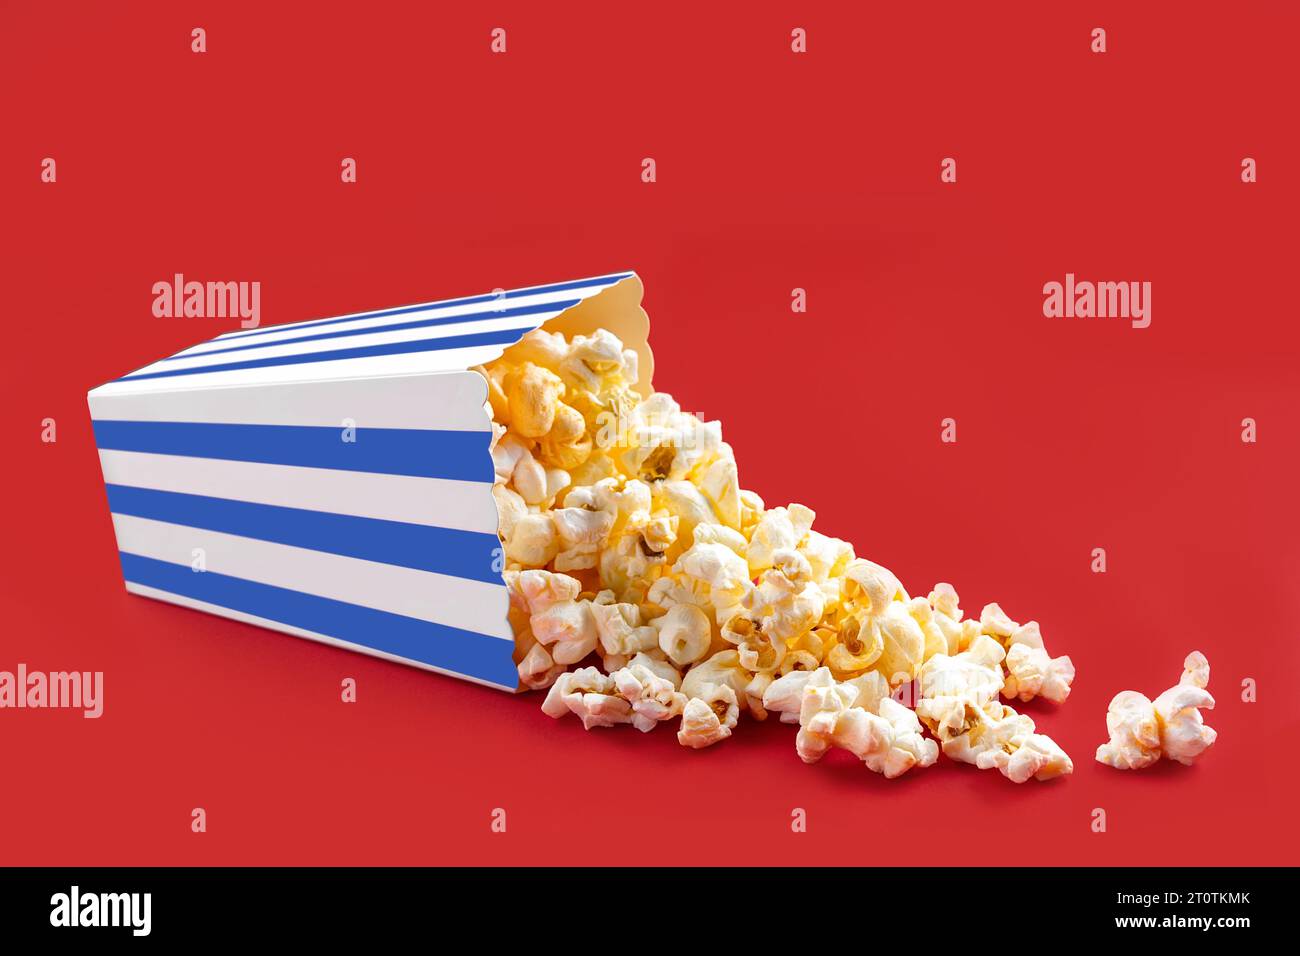 Gustosi popcorn al formaggio che cadono da una scatola di cartone a righe blu o da un secchio, isolato su sfondo rosso. Dispersione di semi di popcorn. Fast food, snack. M Foto Stock